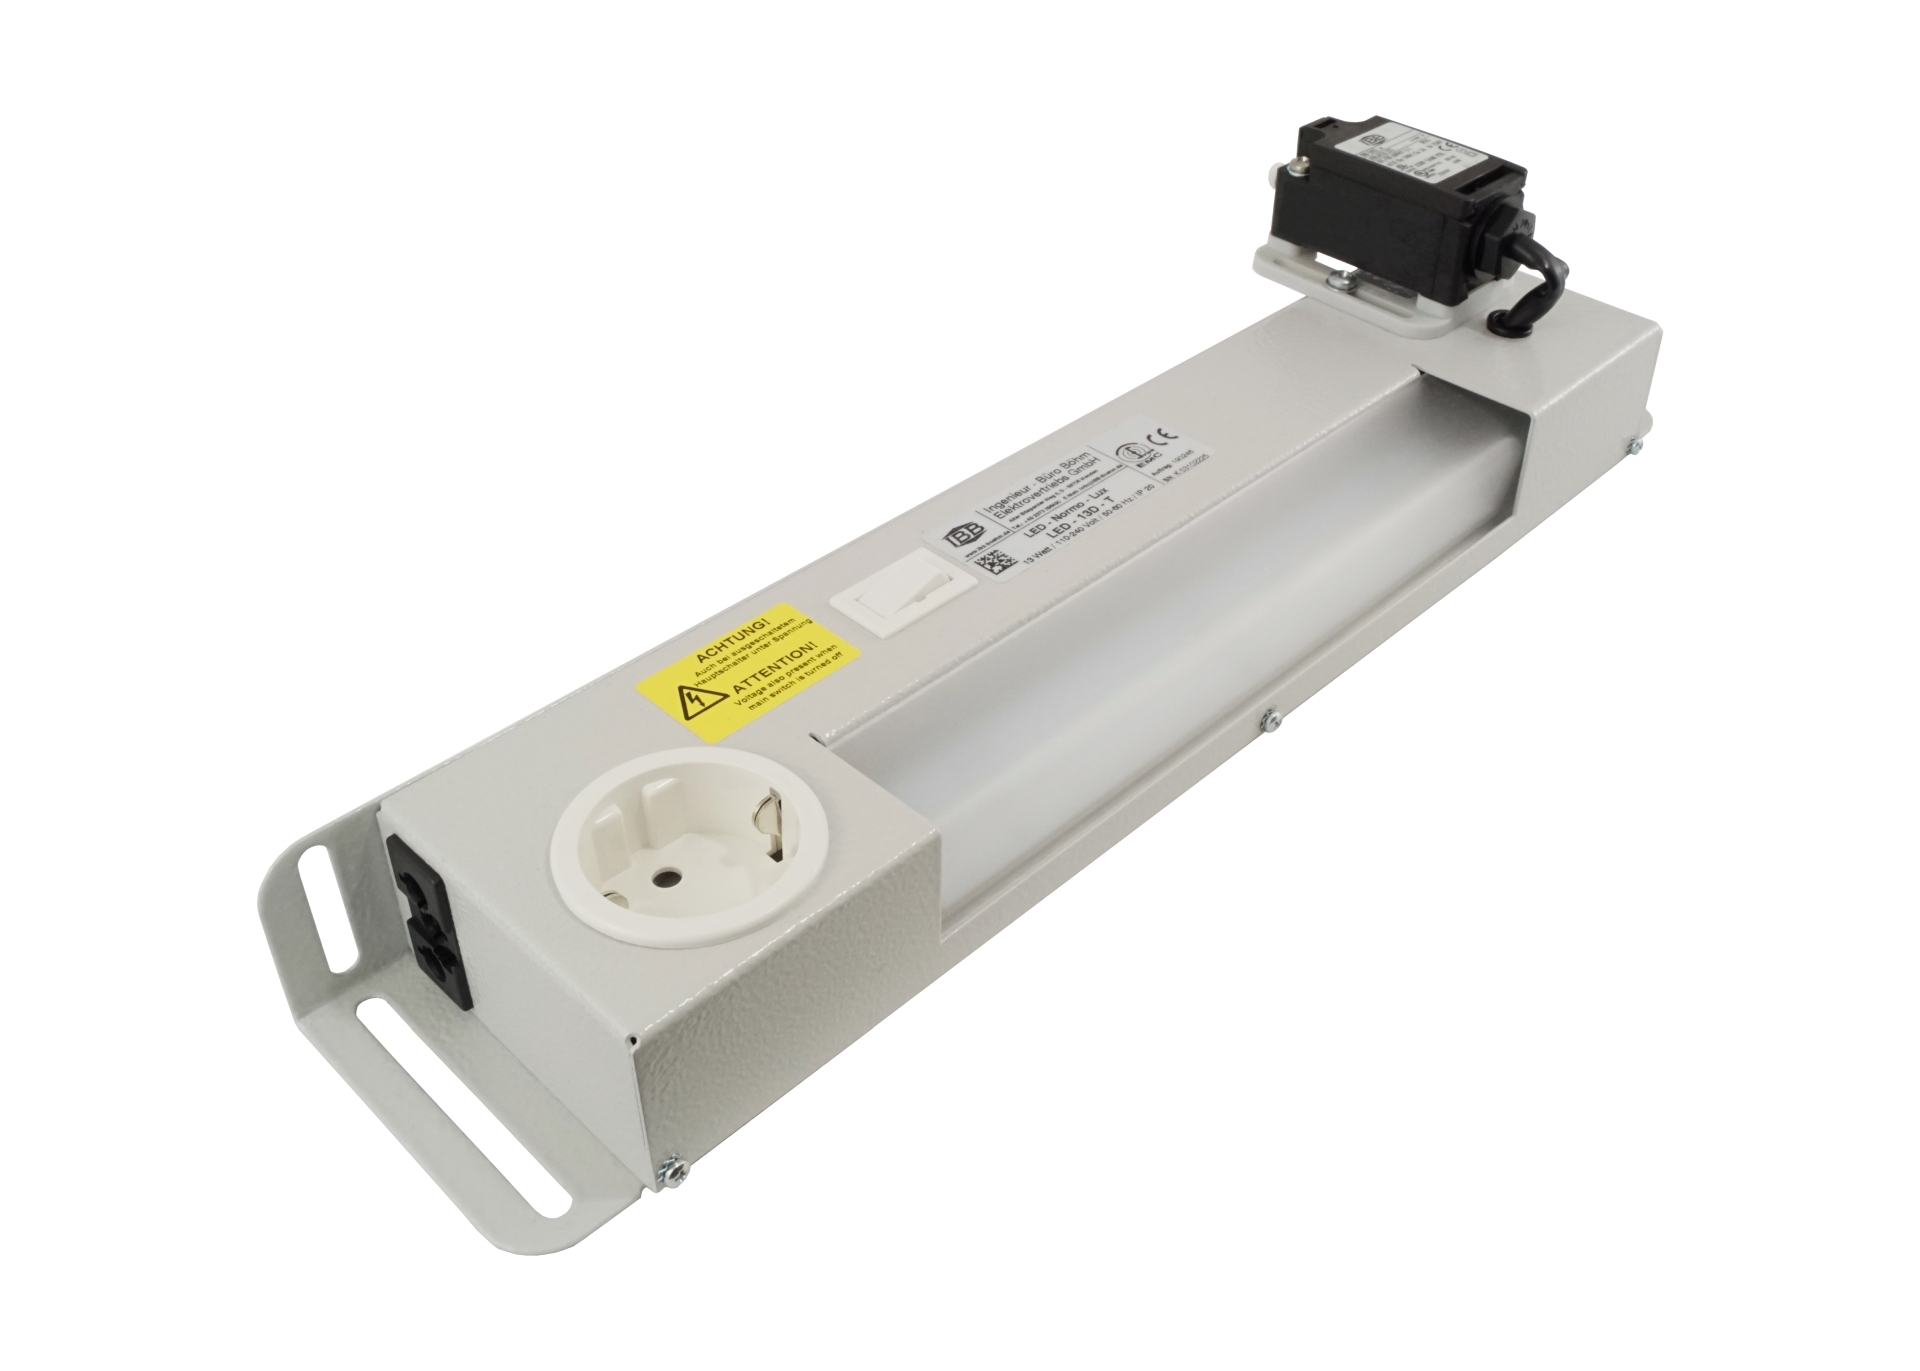 Abbildung LED Schaltschrankleuchte LED-Normo-Lux 13 Watt | Betriebsspannung: 110-240 Volt, 50-60 Hz, potentialfreier Kontakt